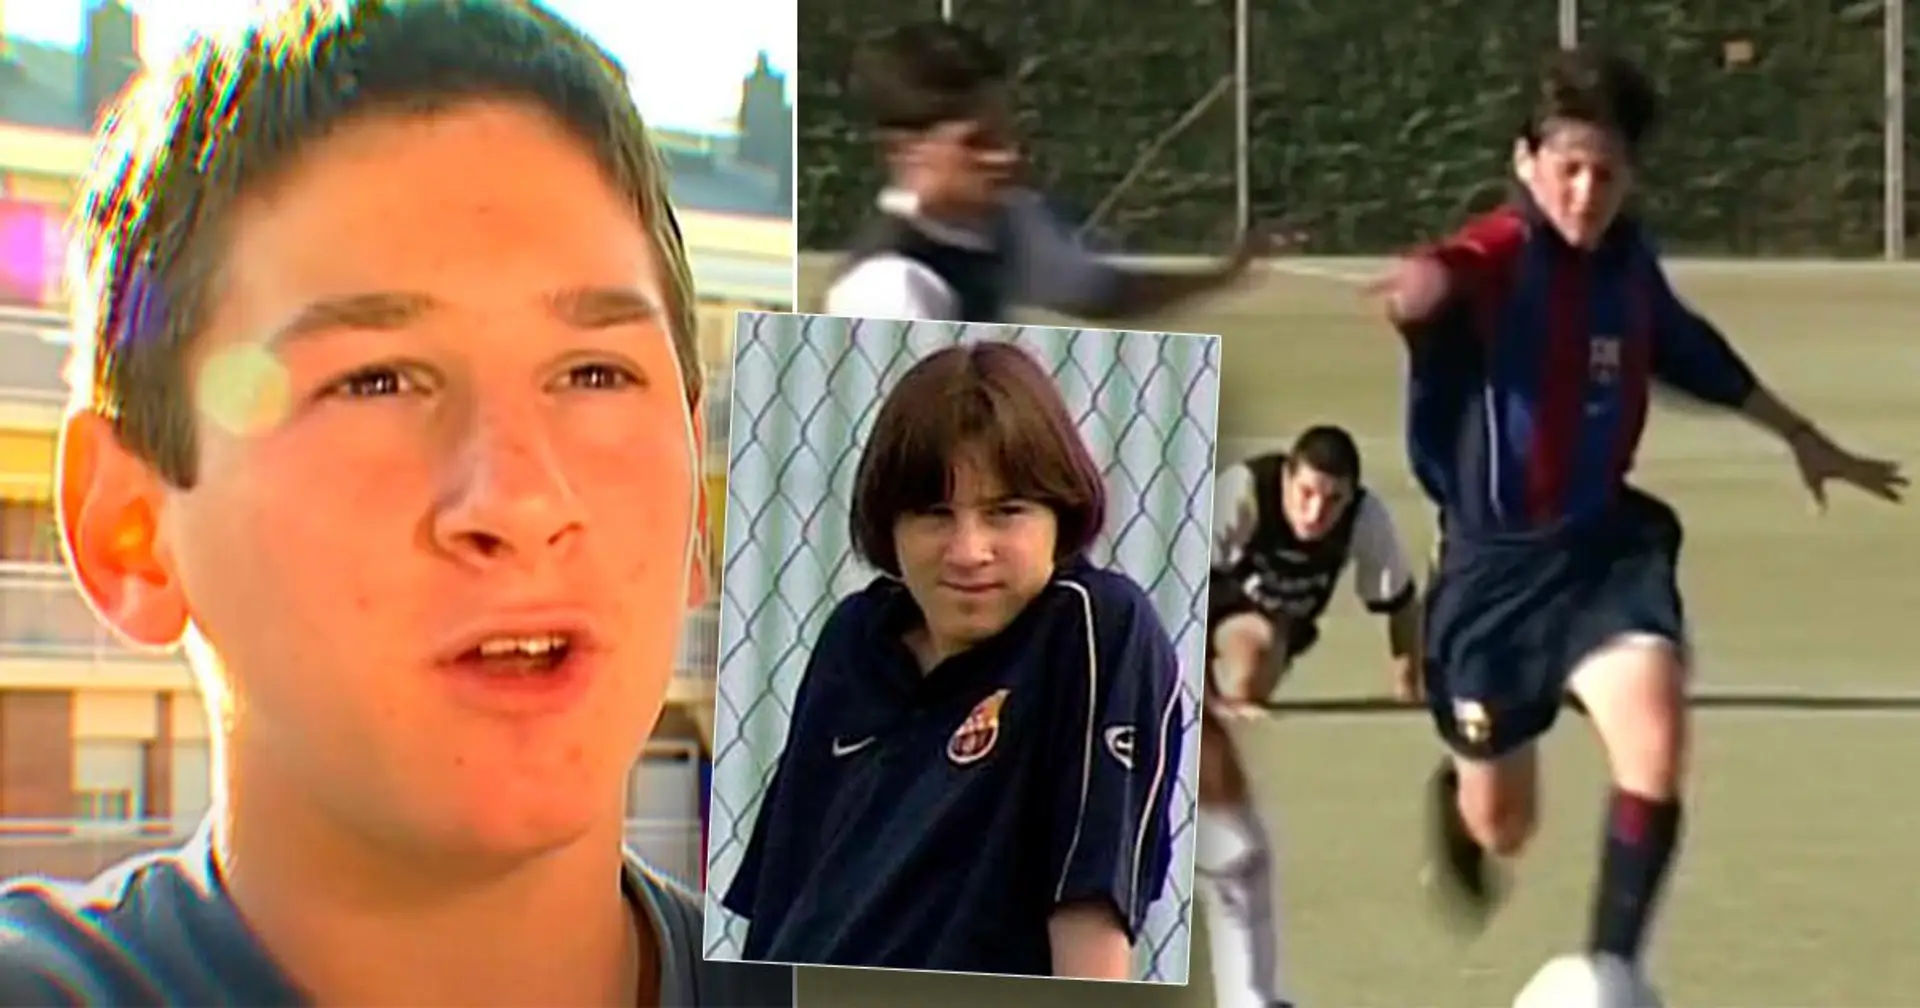 Plaisir coupable: comment l'entraîneur de Messi l'a motivé dans son enfance à marquer plus de buts